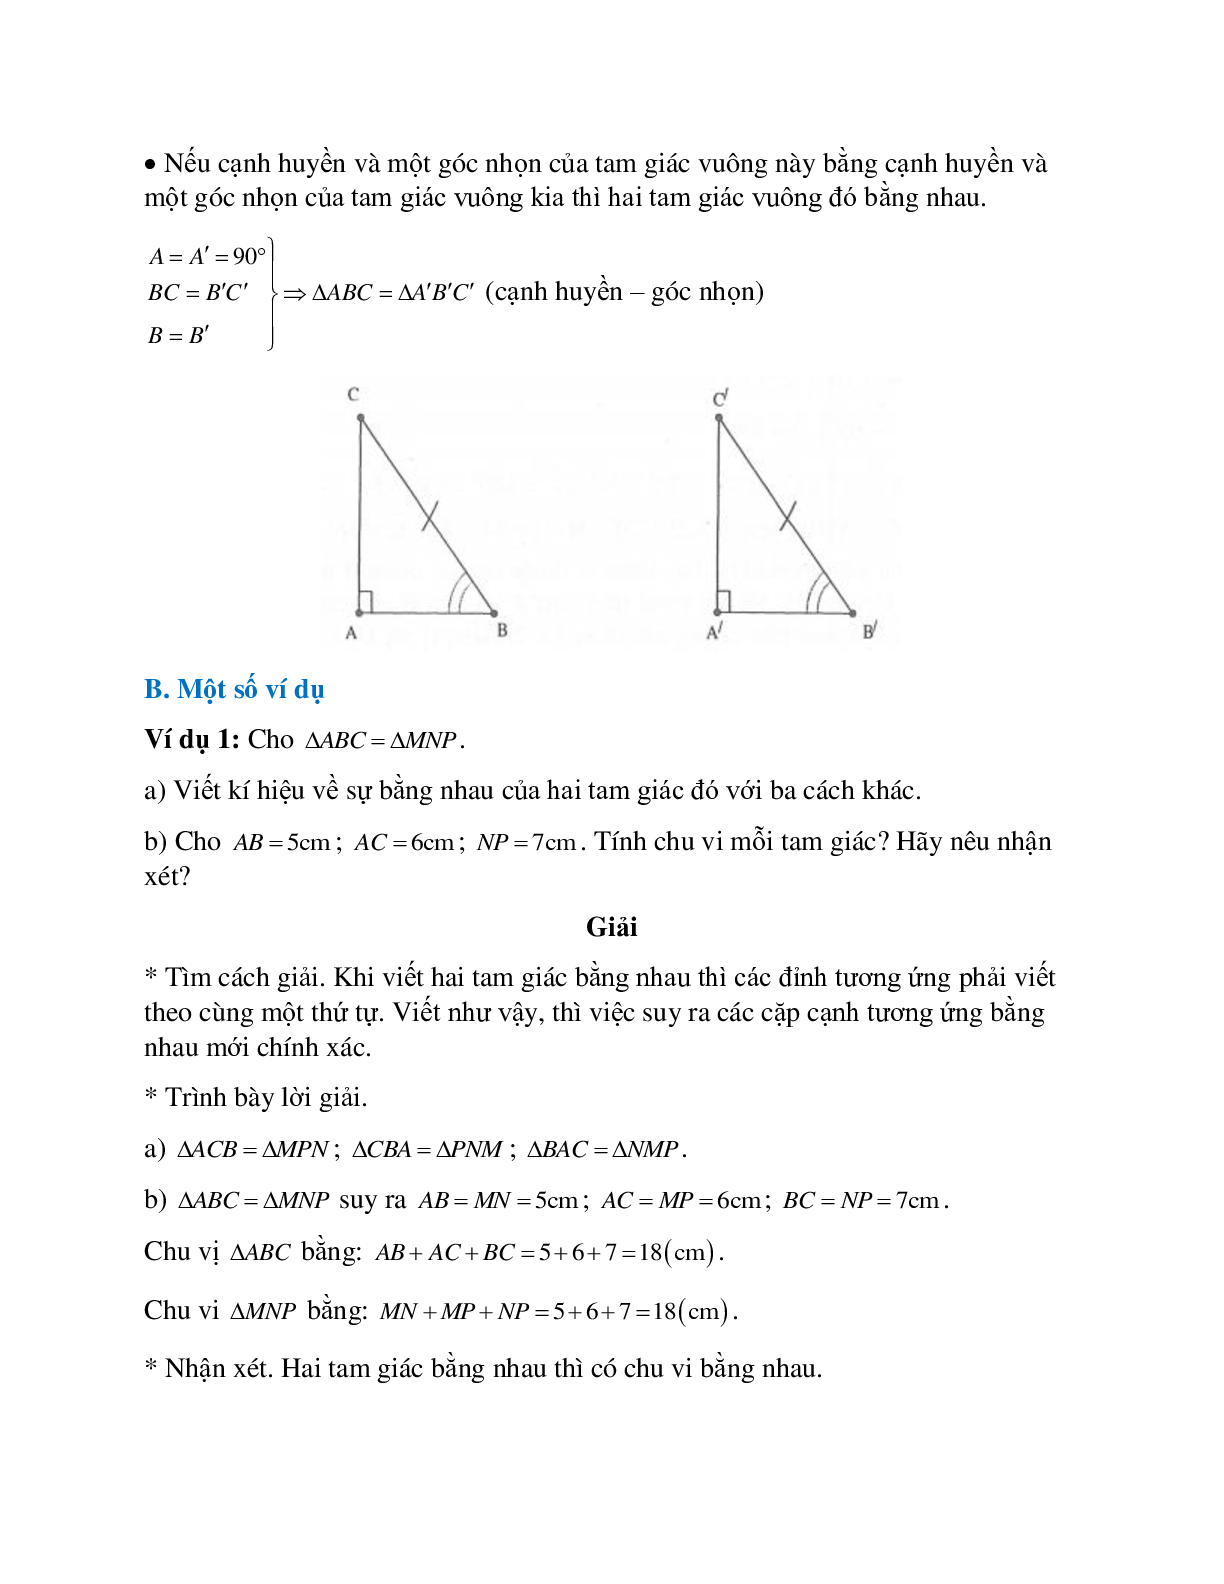 Tuyển tập những bài tập hay gặp về Hai tam giác bằng nhau hình học lớp 7 có lời giải (trang 3)